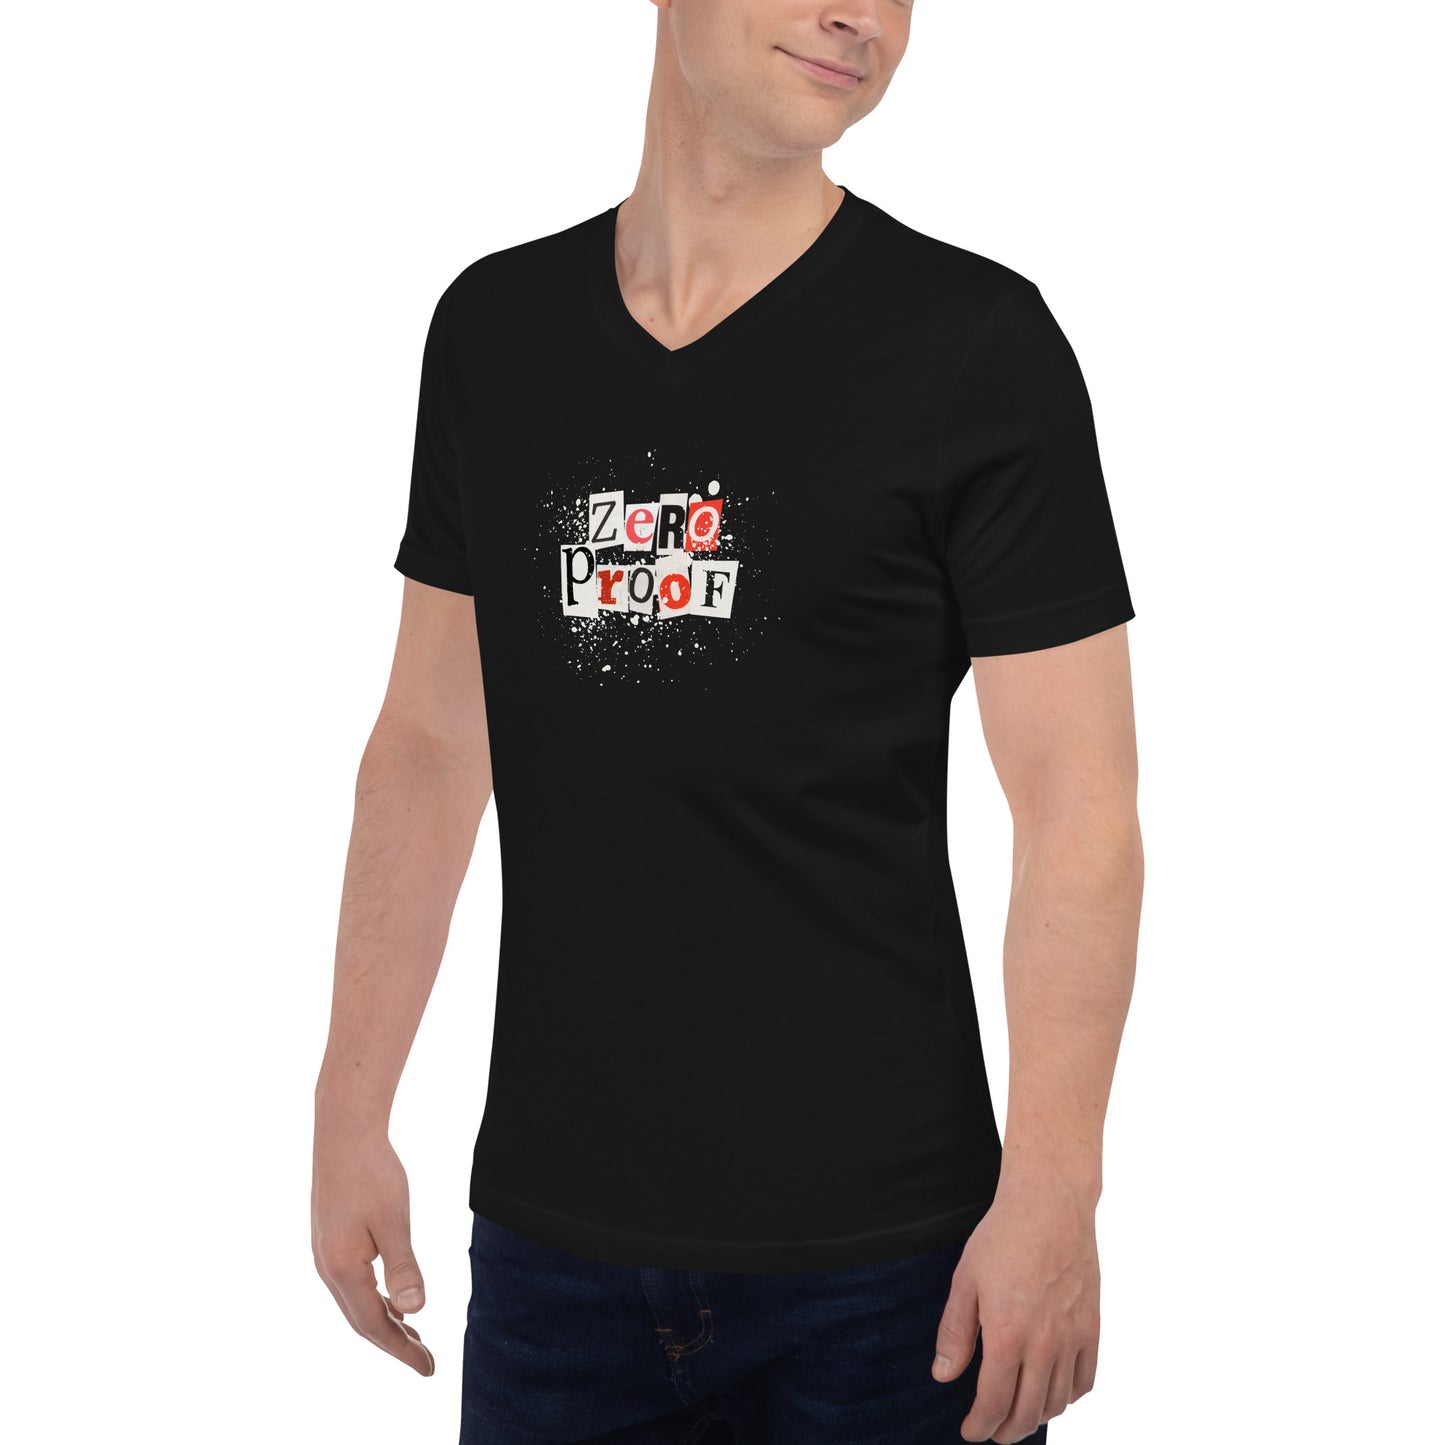 Zero Proof - Unisex Short Sleeve V-Neck T-Shirt